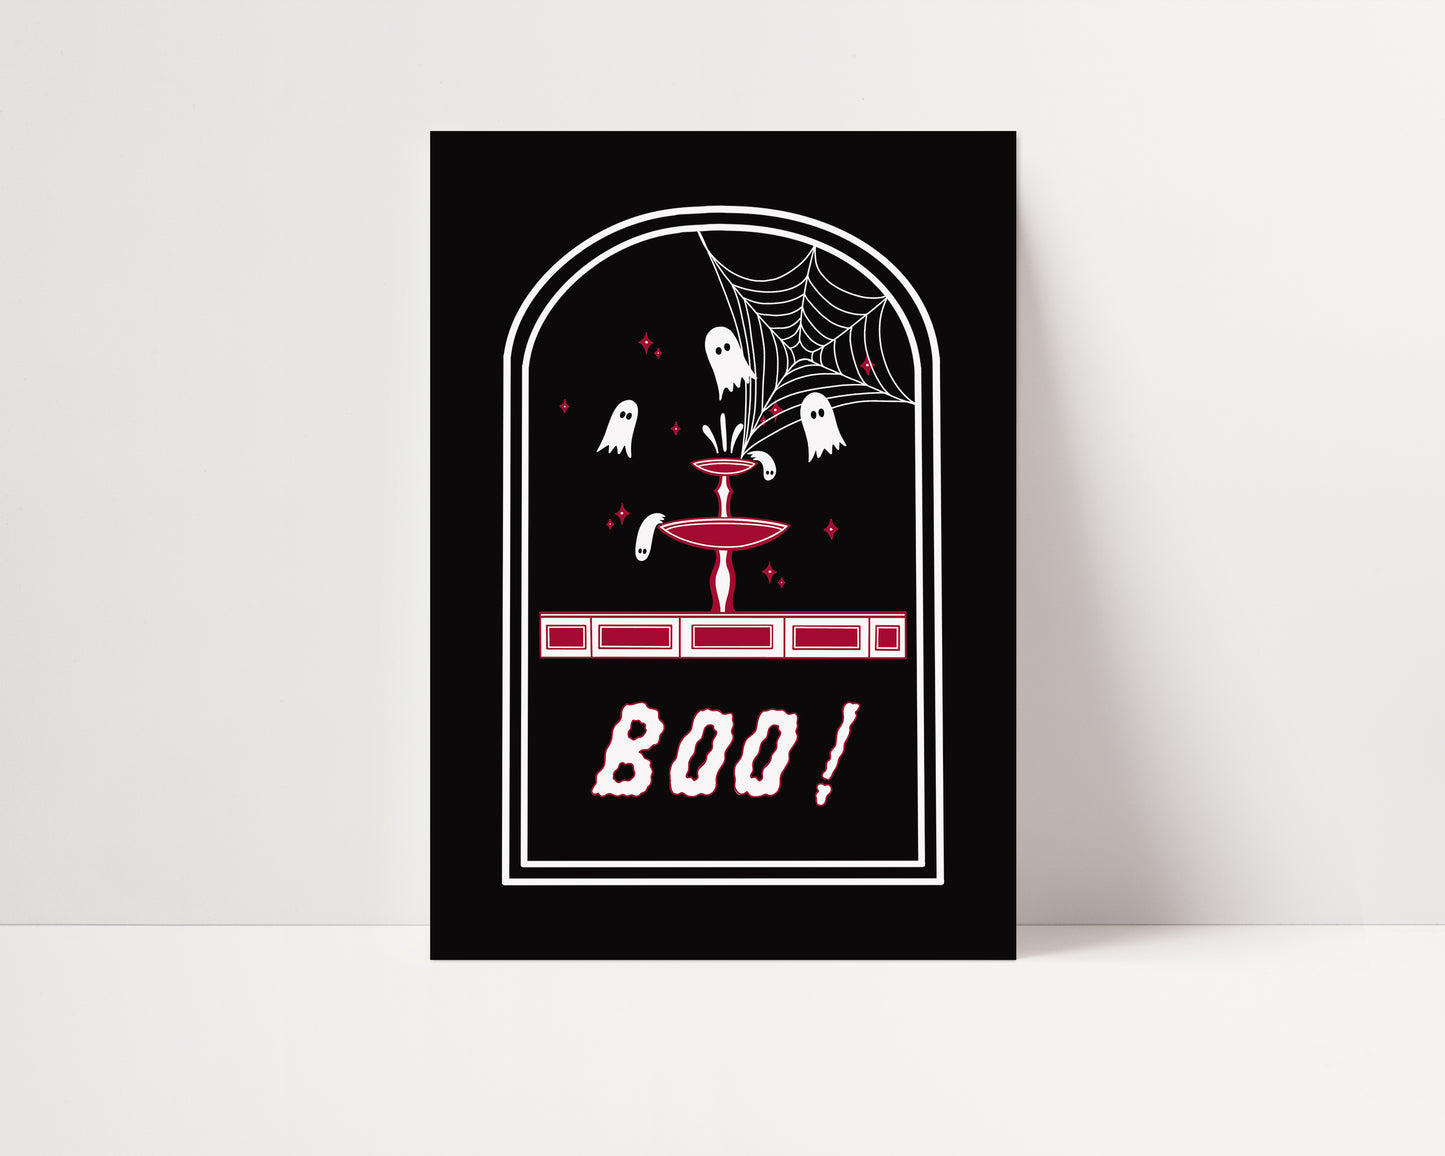 Boo! - Spooky Ghost Fountain Card, Halloween Card